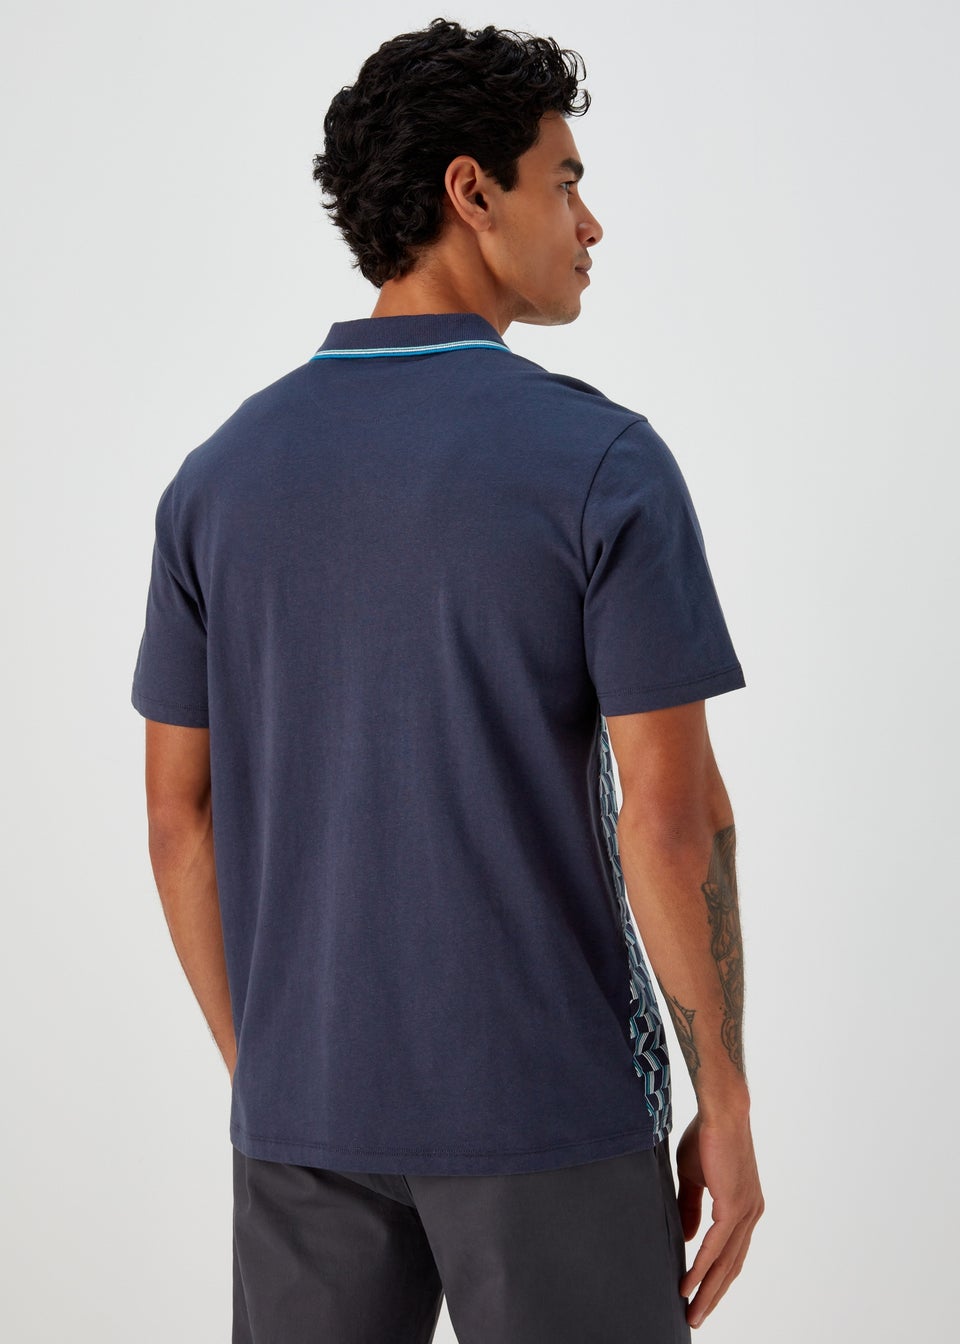 Navy & Teal Print Smart Polo Shirt